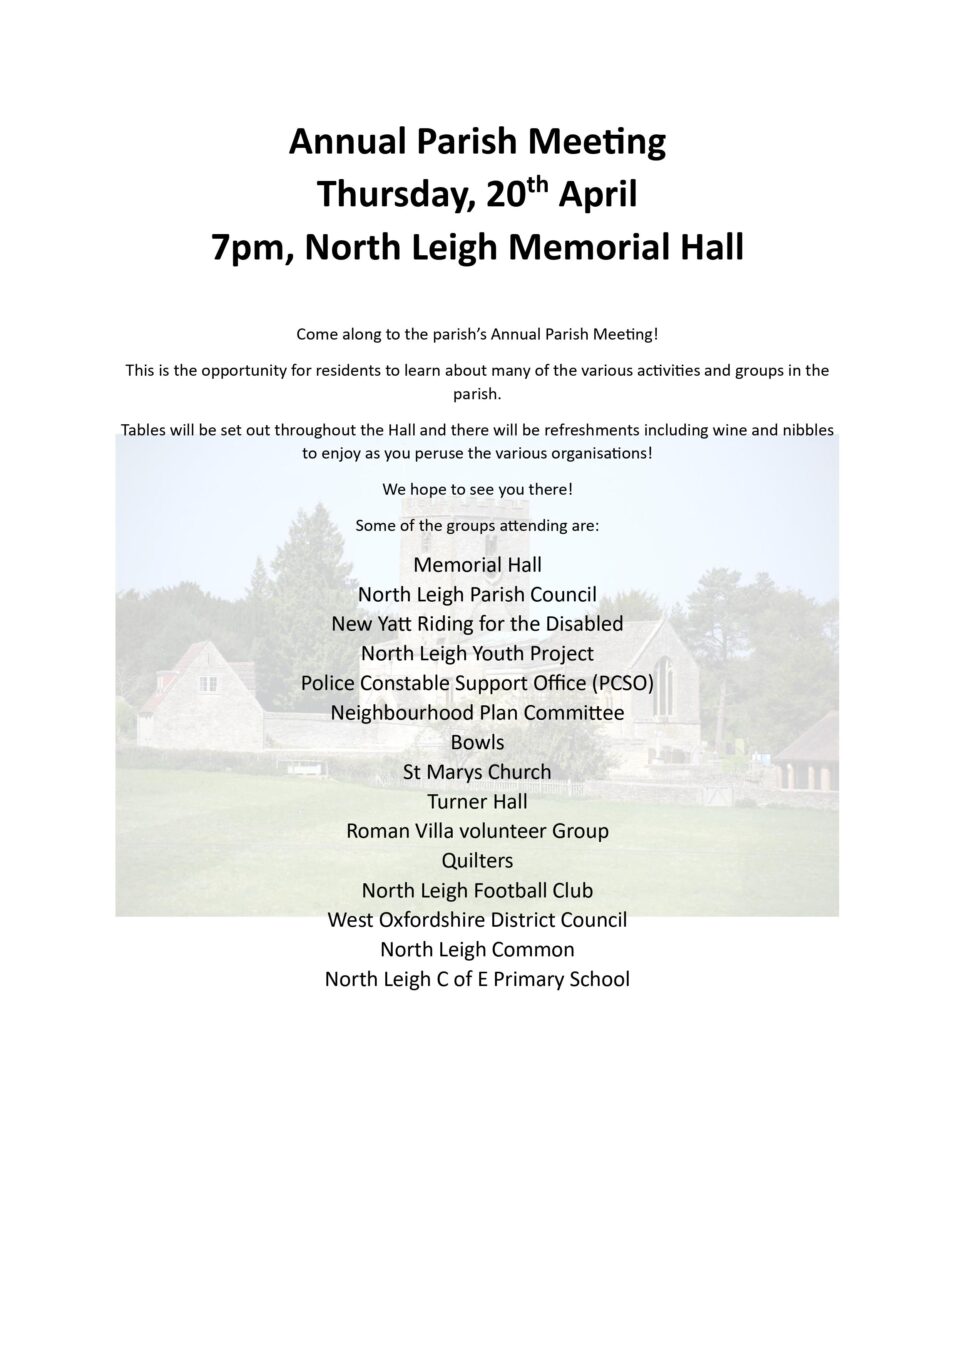 Annual Parish Meeting poster 20th April 7pm Memorial Hall